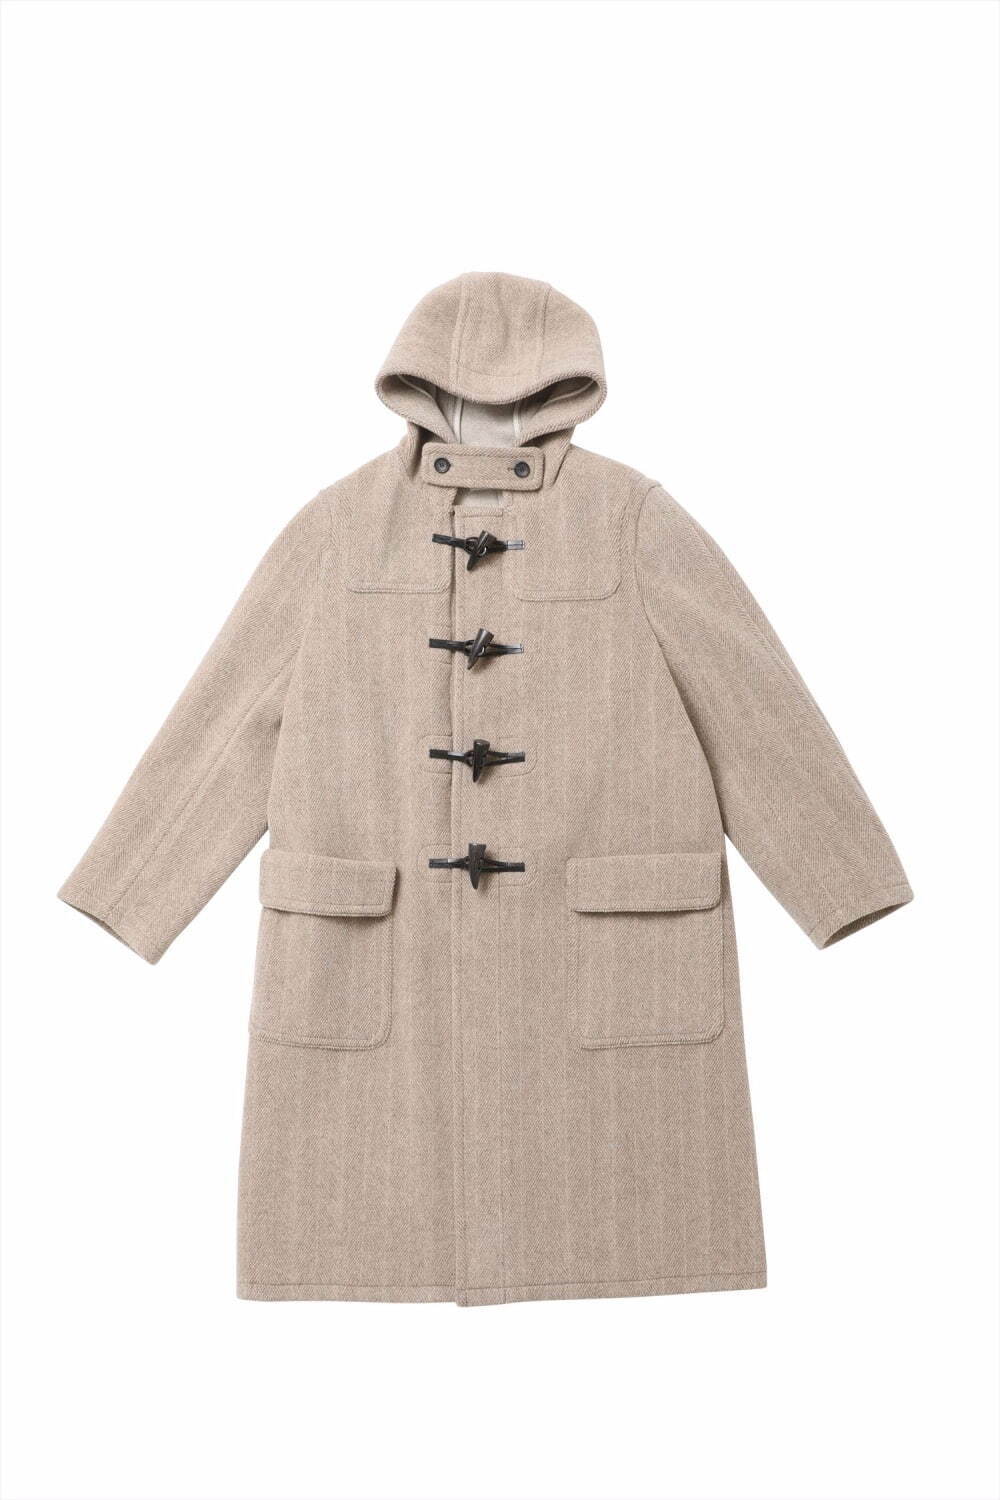 ビューティフルピープルのスタンダードライン「ザ」定番ダッフルコートを“より軽く、暖かく”アップデート - ファッションプレス